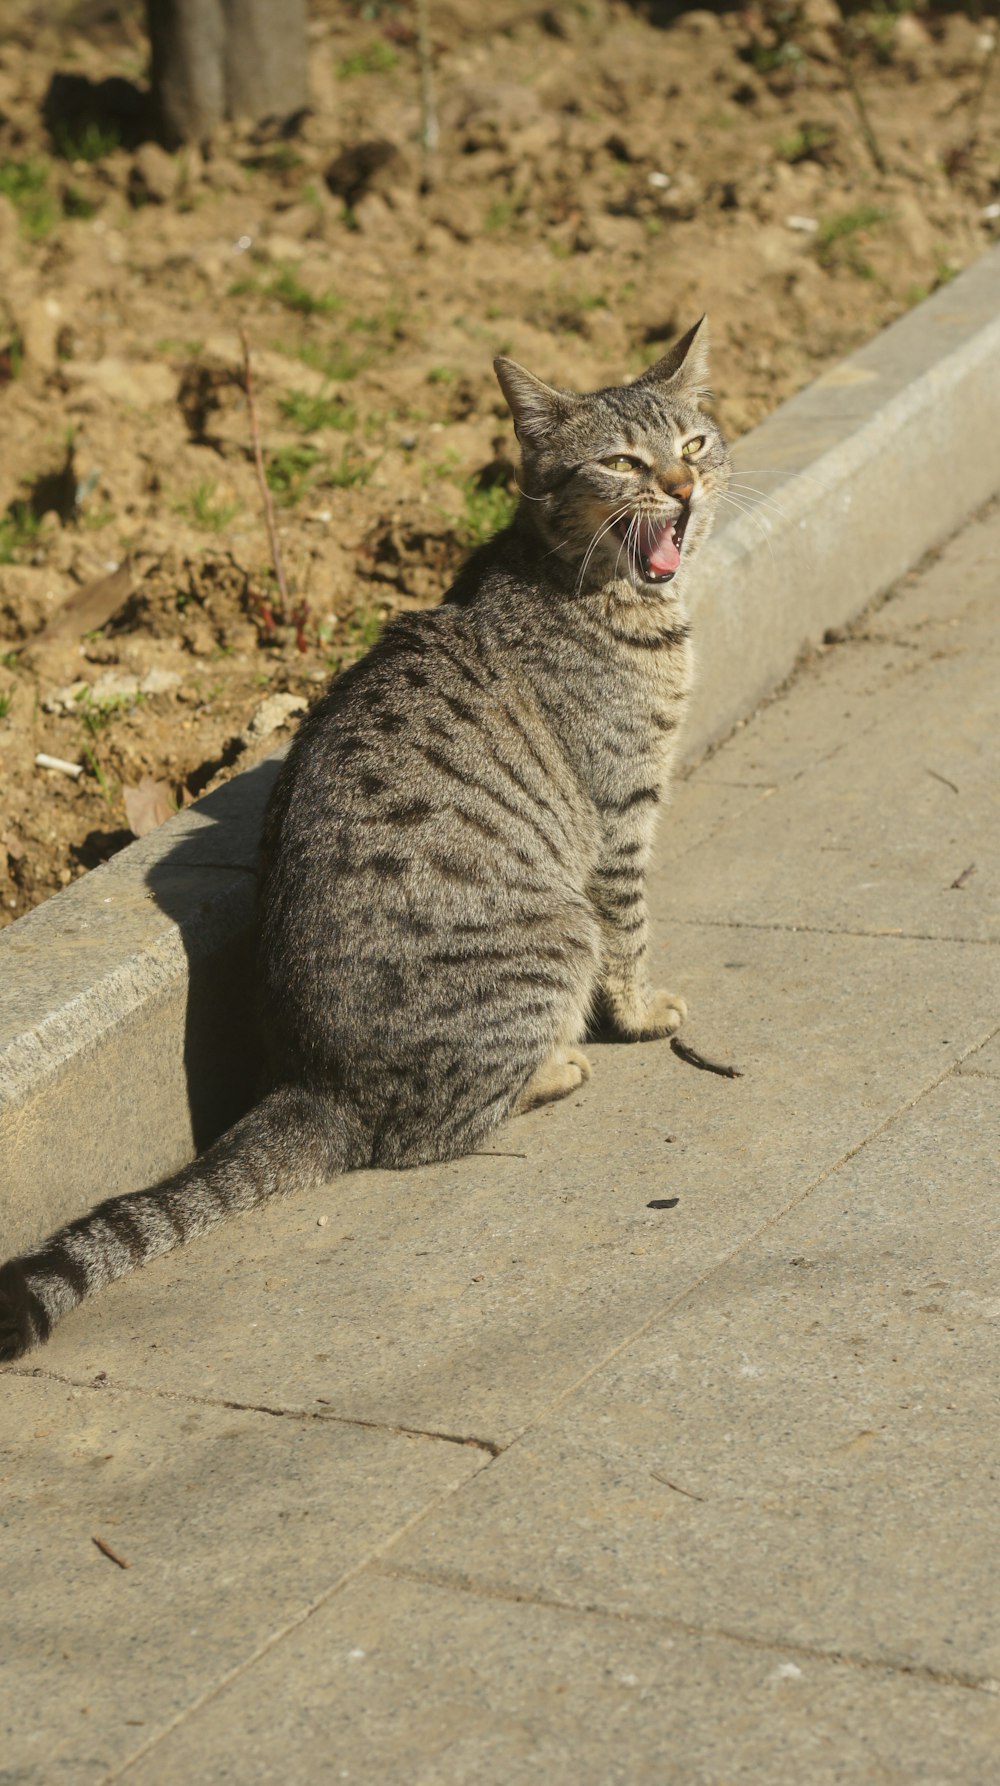 a cat yawns while sitting on a sidewalk